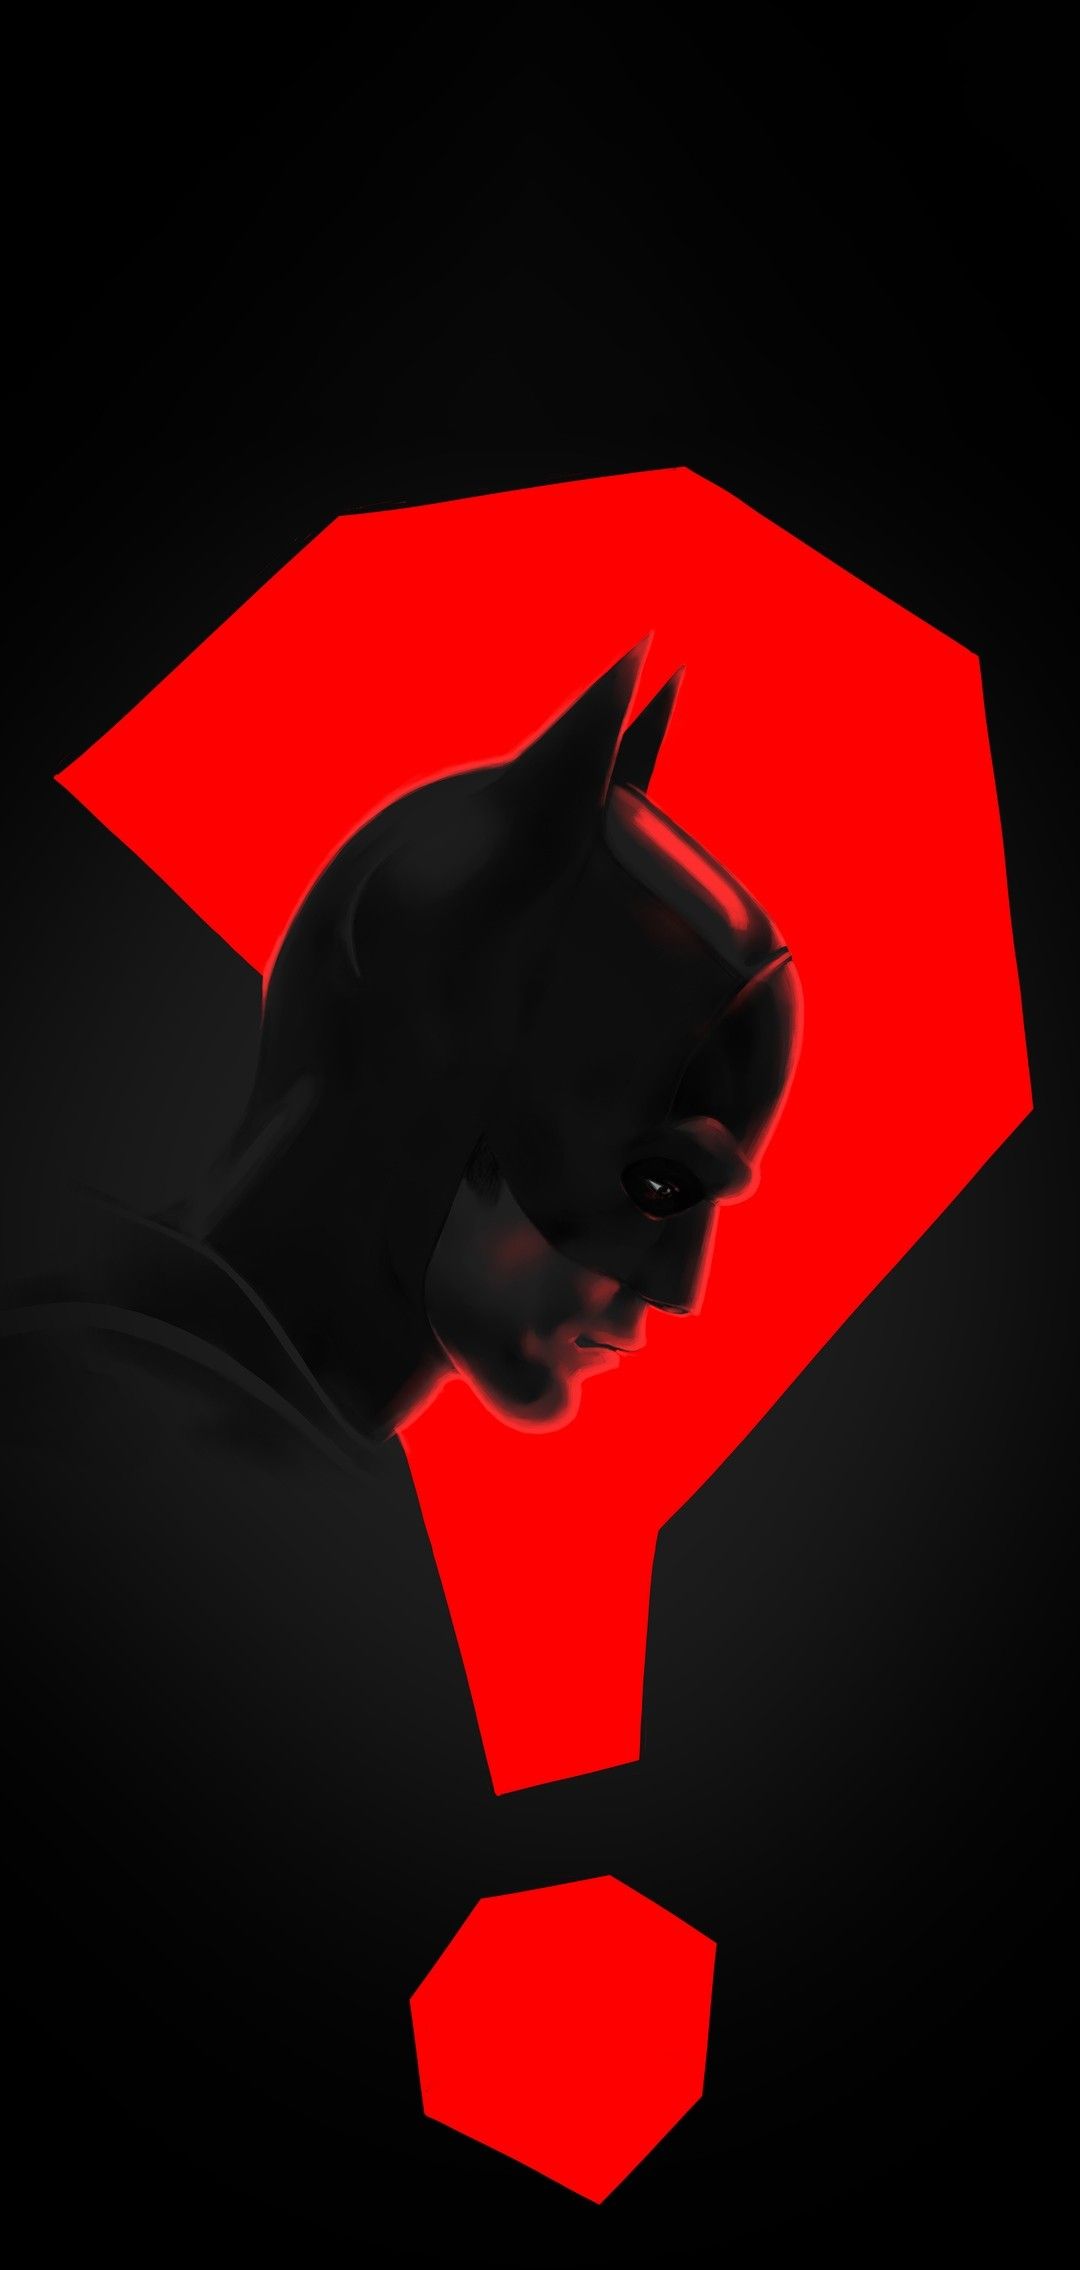 Batman Wallpaper - iXpap